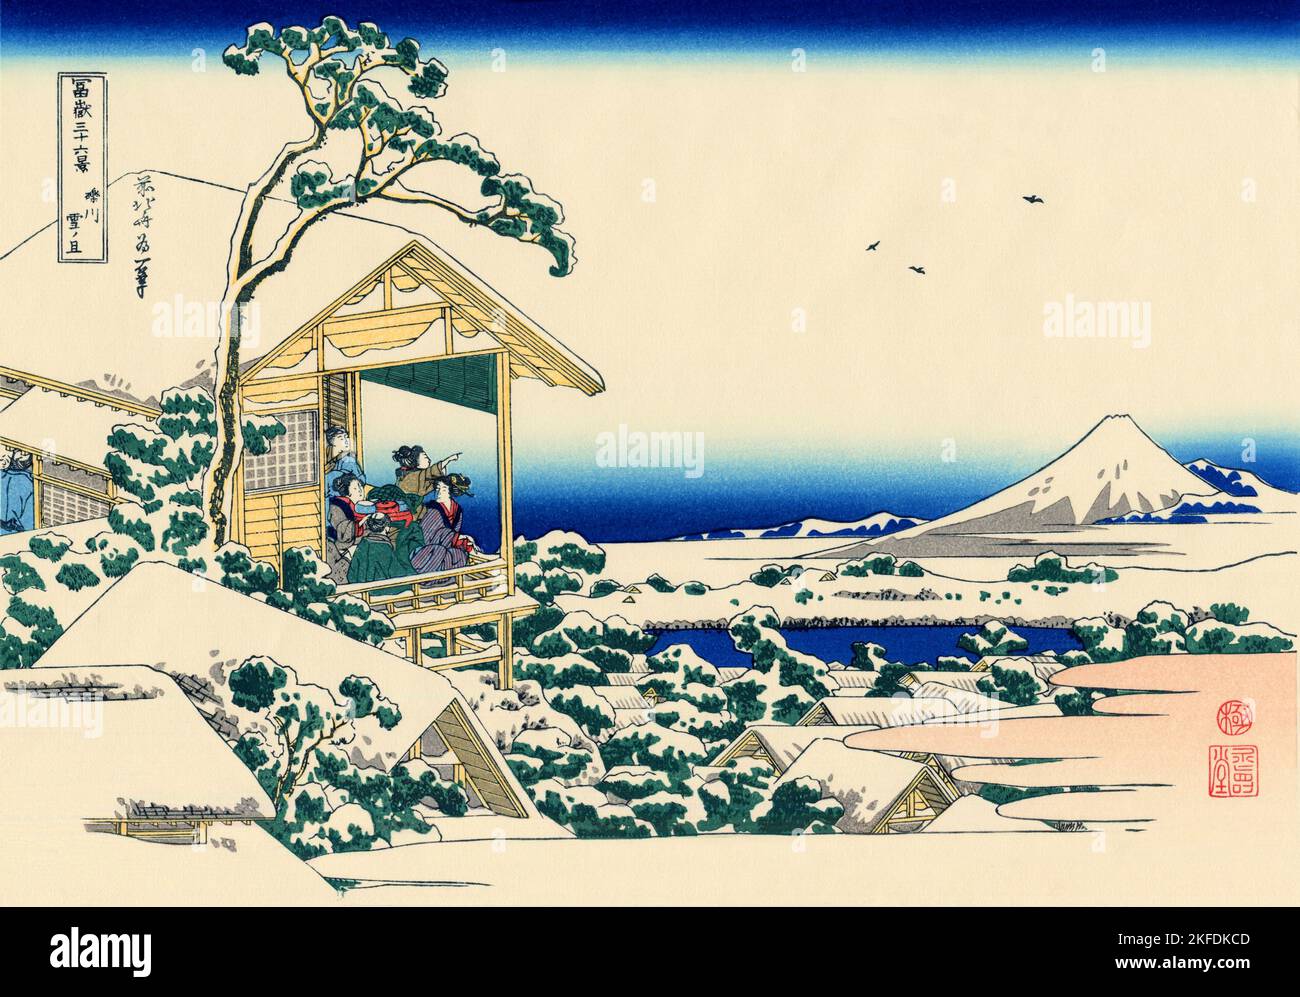 Japón: «Koishikawa por la mañana después de una nevada». Impresión en bloque de madera ukiyo-e de la serie «Treinta y seis vistas del monte Fuji» de Katsushika Hokusai (31 de octubre de 1760 - 10 de mayo de 1849), 1830. «Treinta y seis vistas del monte Fuji» es una serie «ukiyo-e» de grabados en madera del artista japonés Katsushika Hokusai. La serie muestra el Monte Fuji en diferentes estaciones y condiciones climáticas desde diversos lugares y distancias. En realidad consiste en 46 impresiones creadas entre 1826 y 1833. Los primeros 36 fueron incluidos en la publicación original y, debido a su popularidad, se agregaron 10 más. Foto de stock